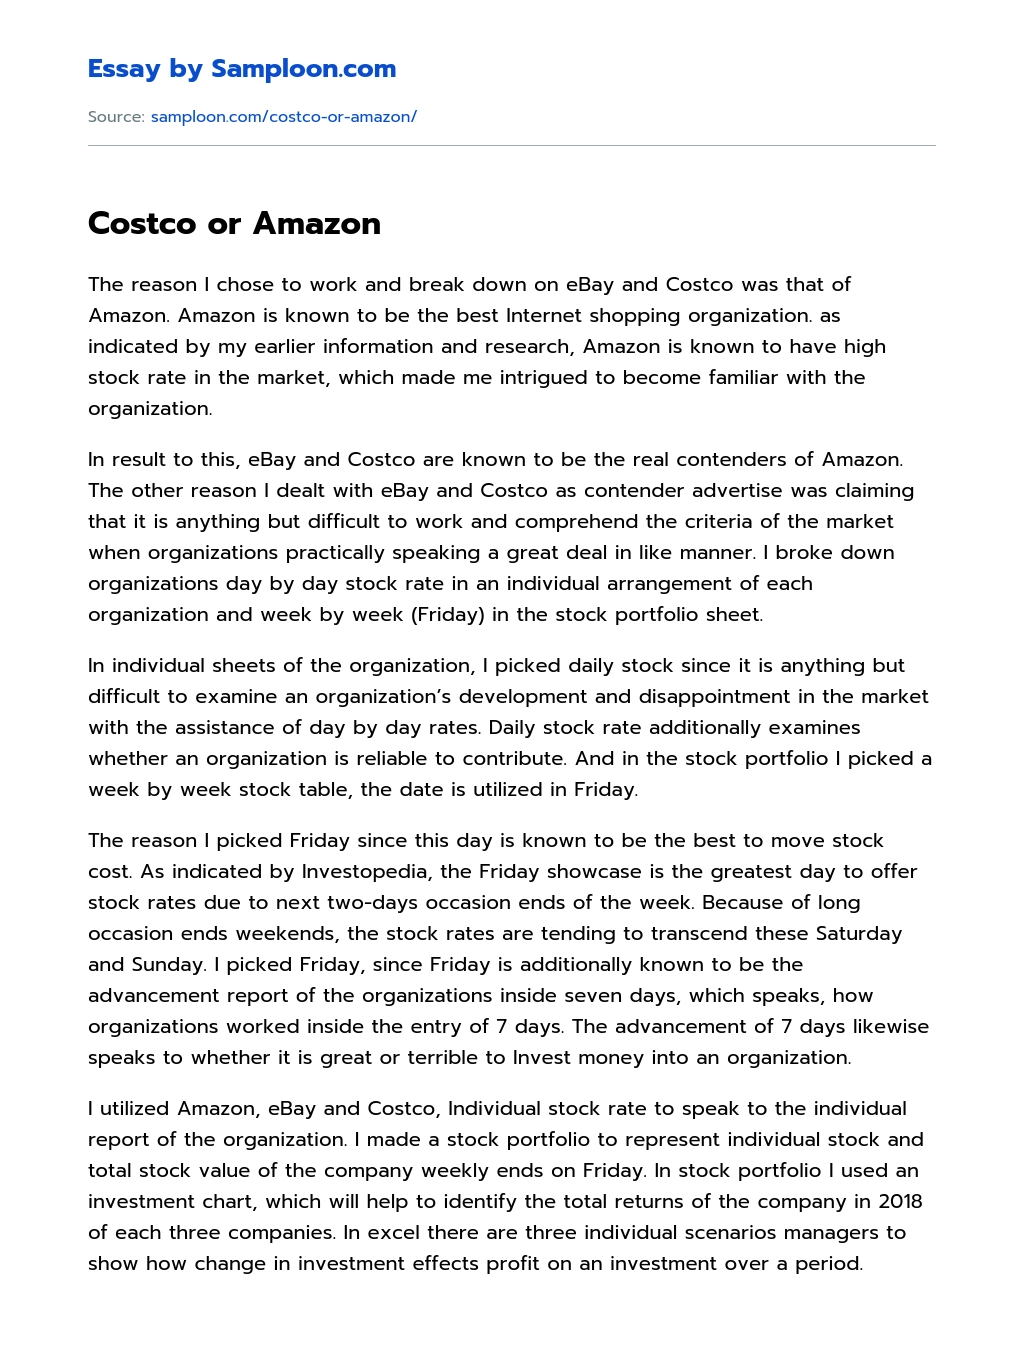 Costco or Amazon essay